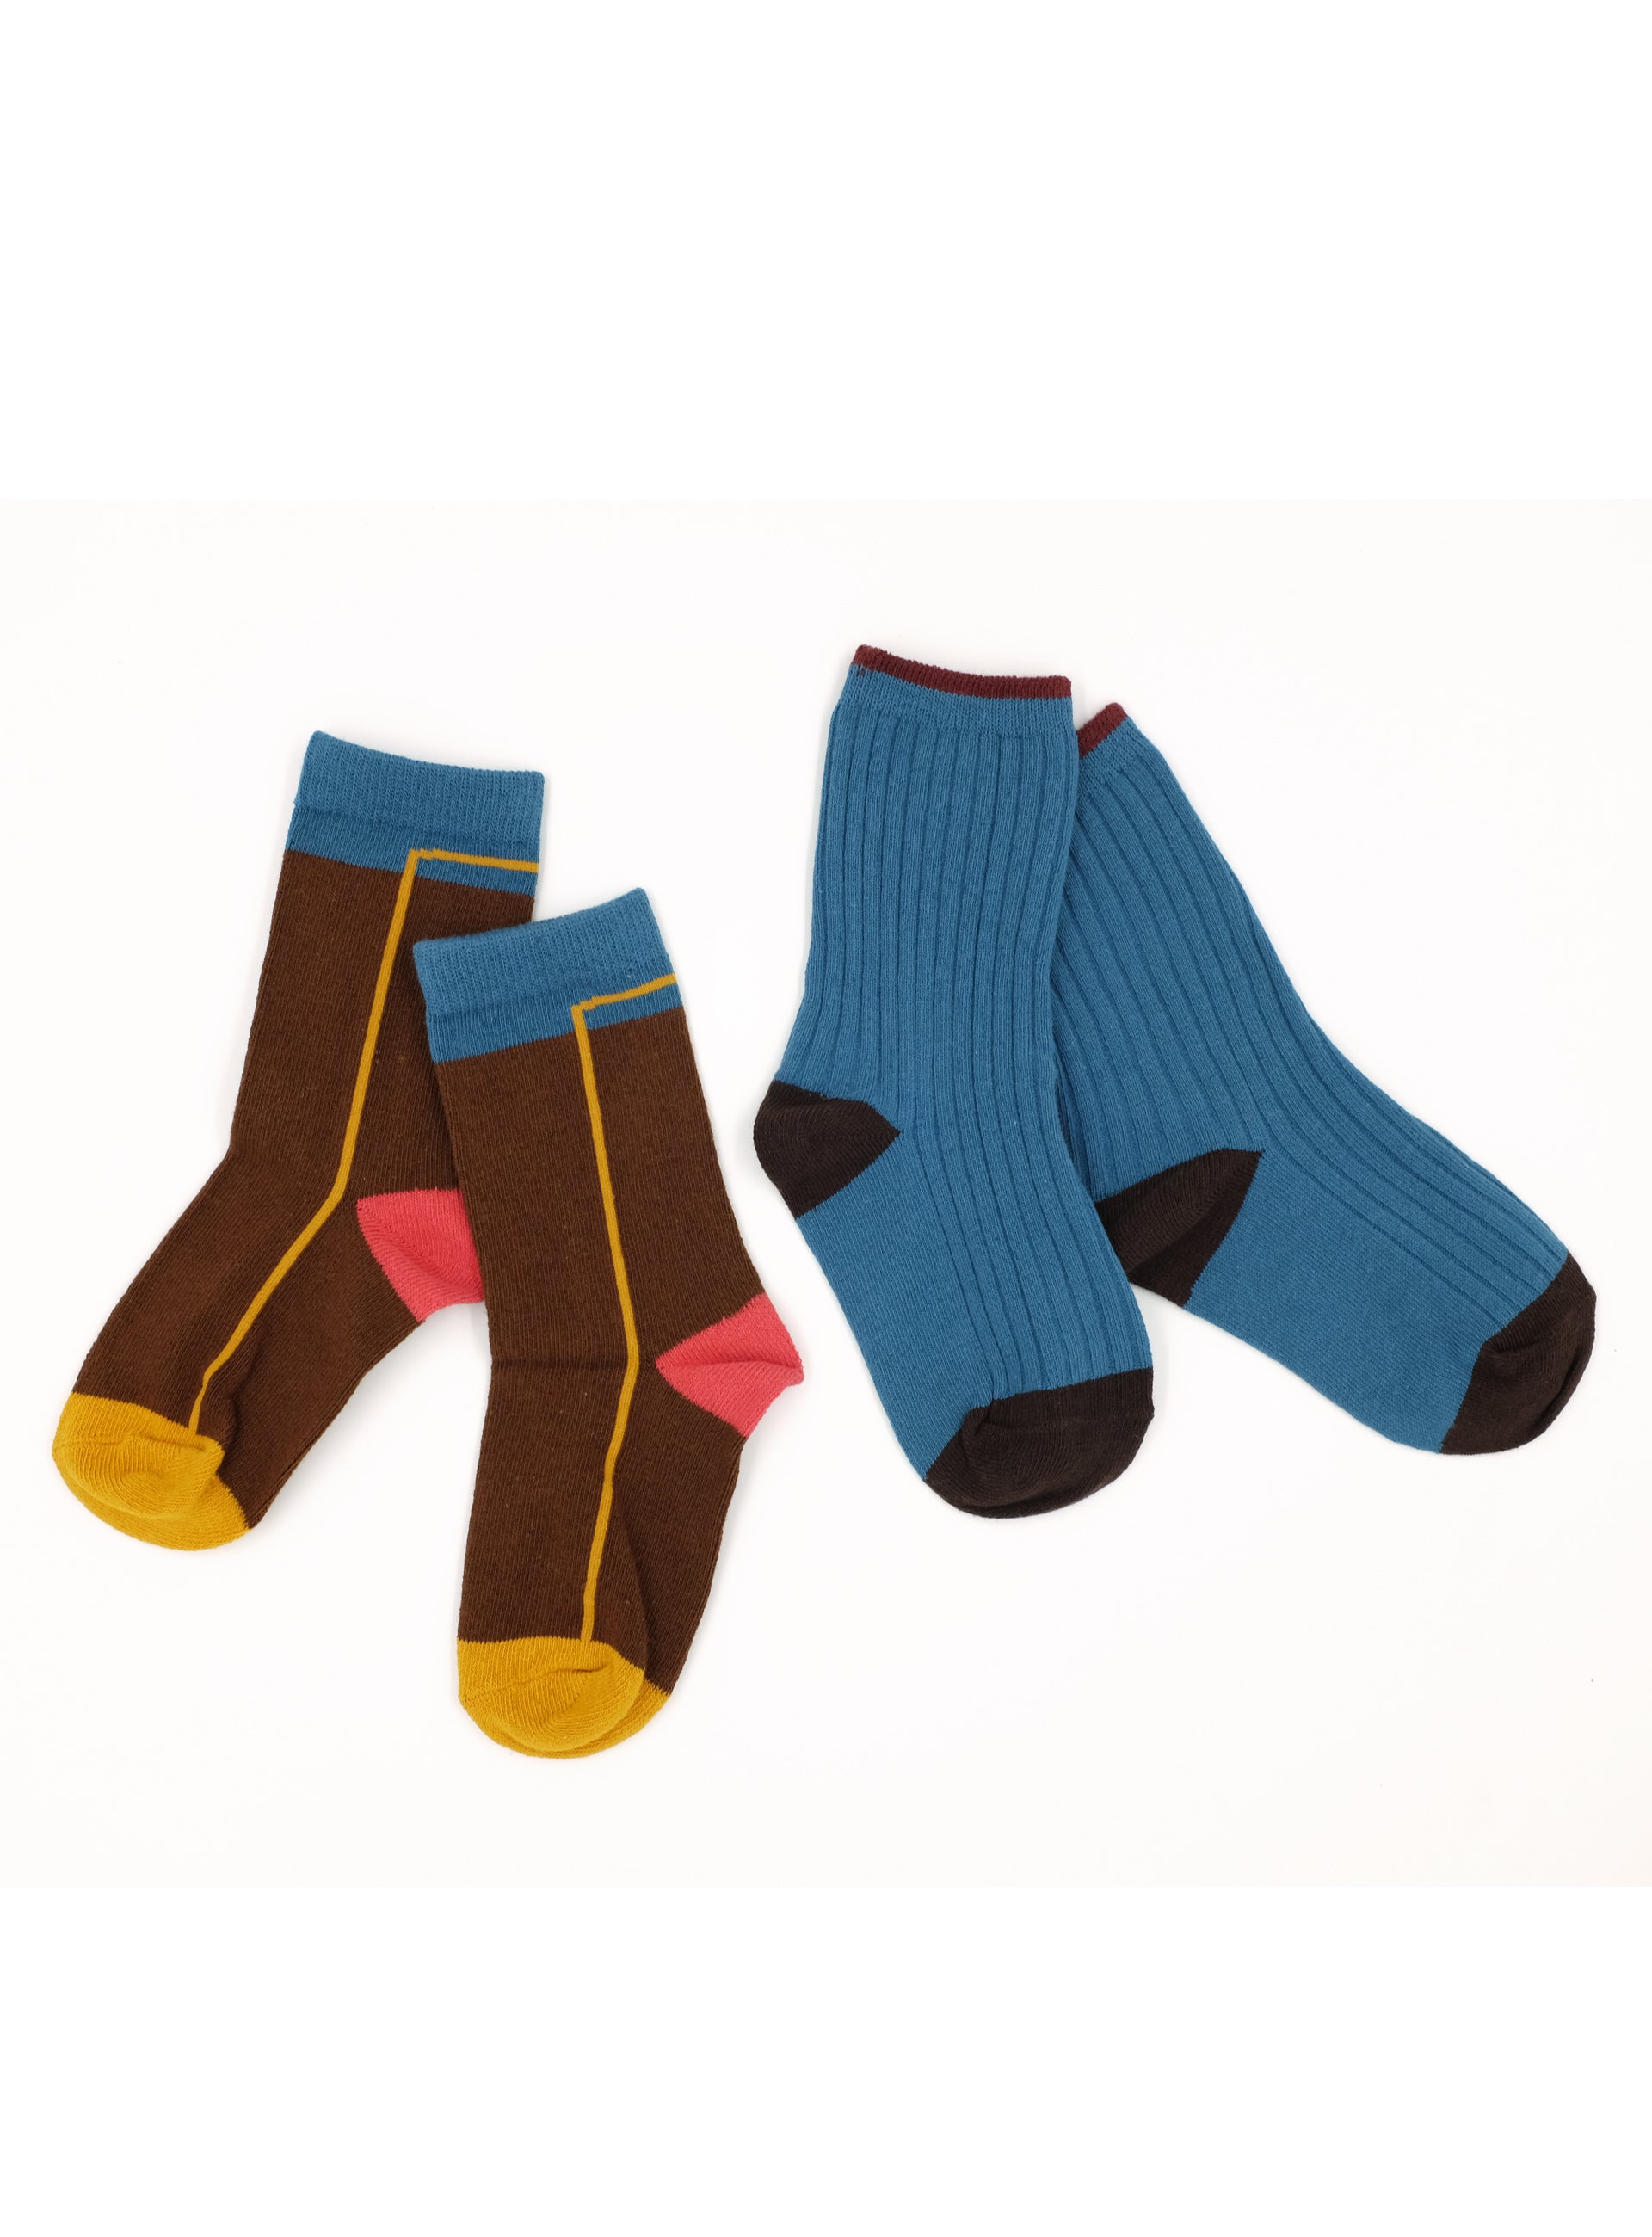 we love versatile blue pair of socks